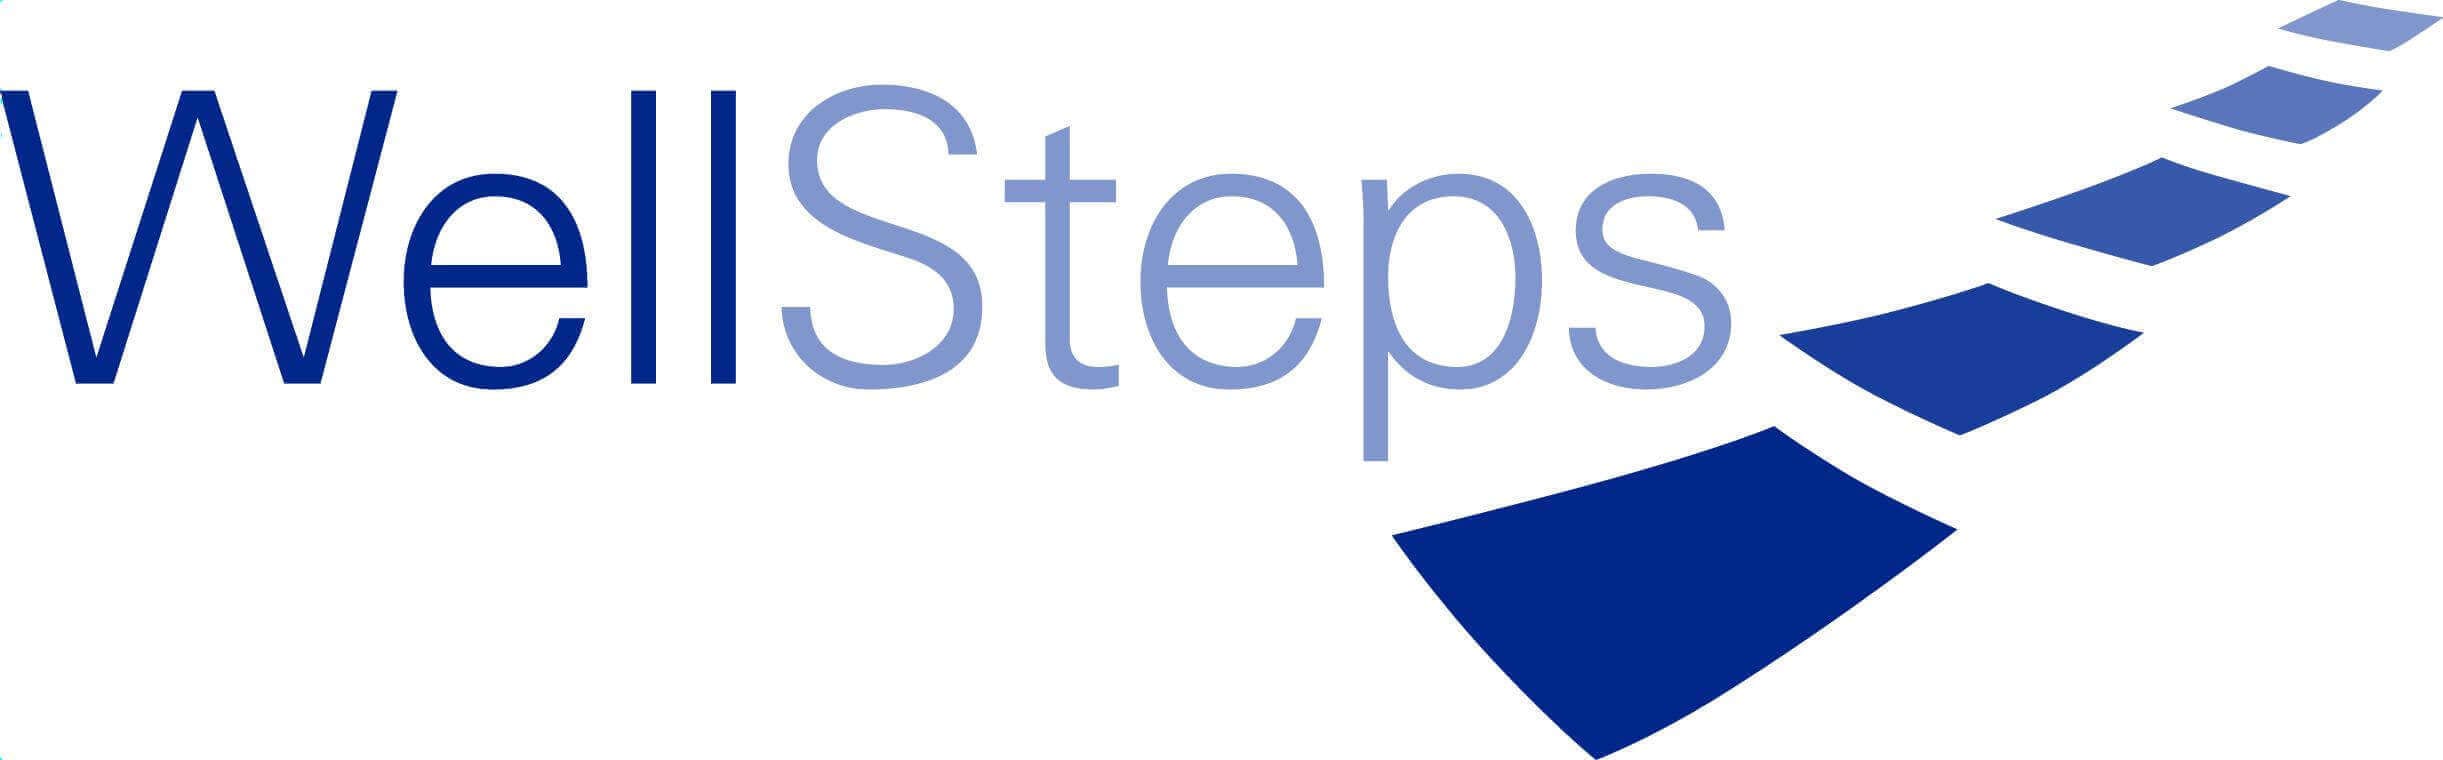 WellSteps_Logo.jpg